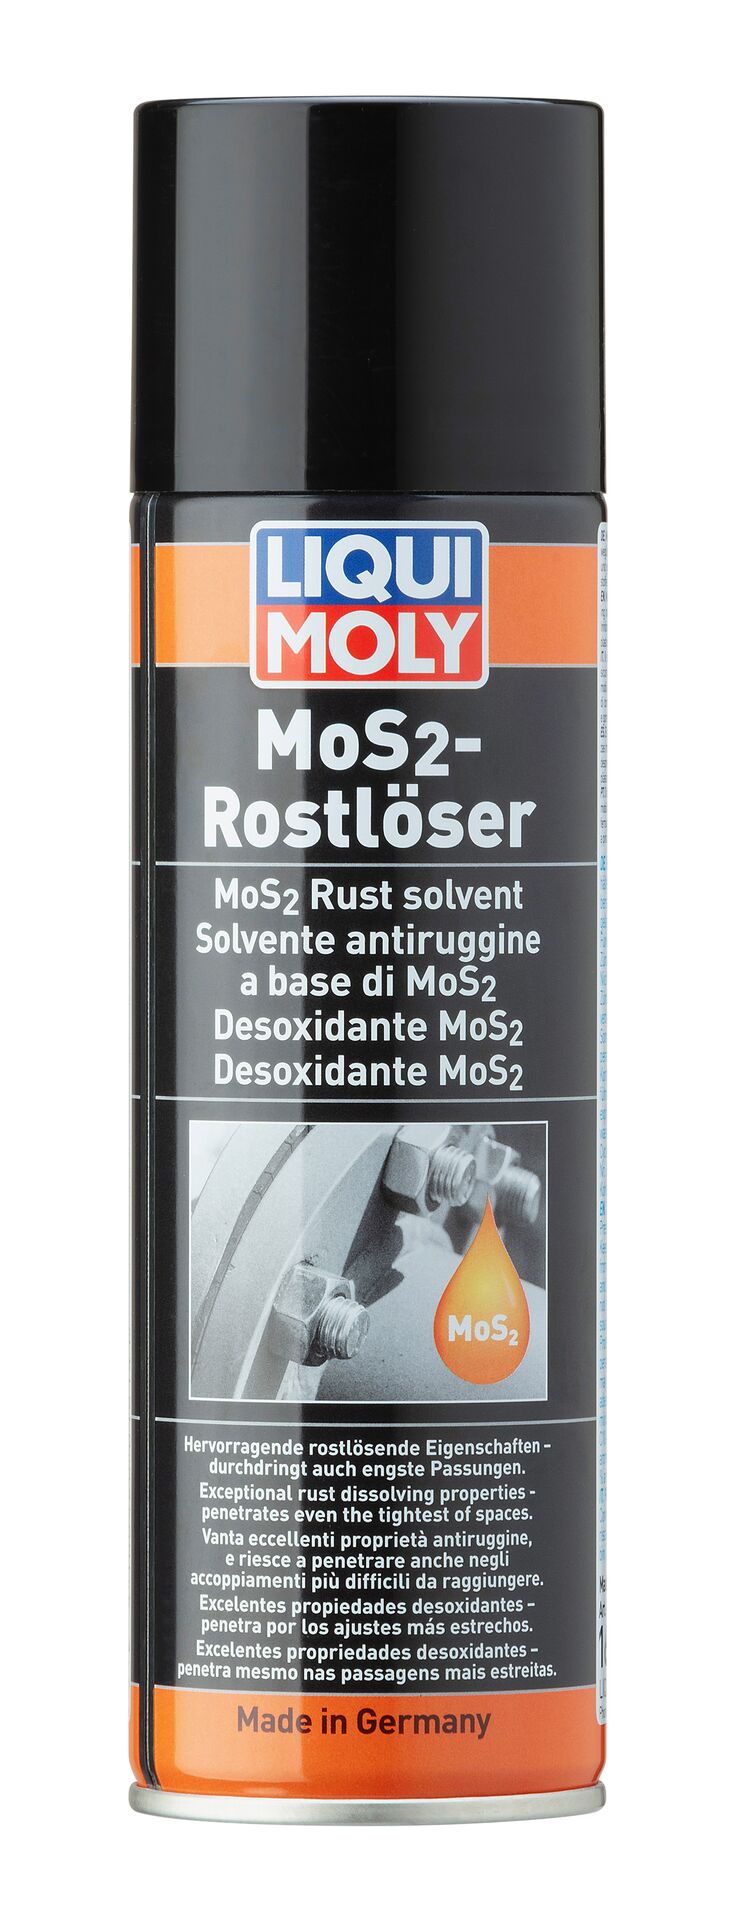 Liqui Moly MoS2 Rostlöser Gleitmittel Rostentferner Korrosionsschutz Spray 300ml